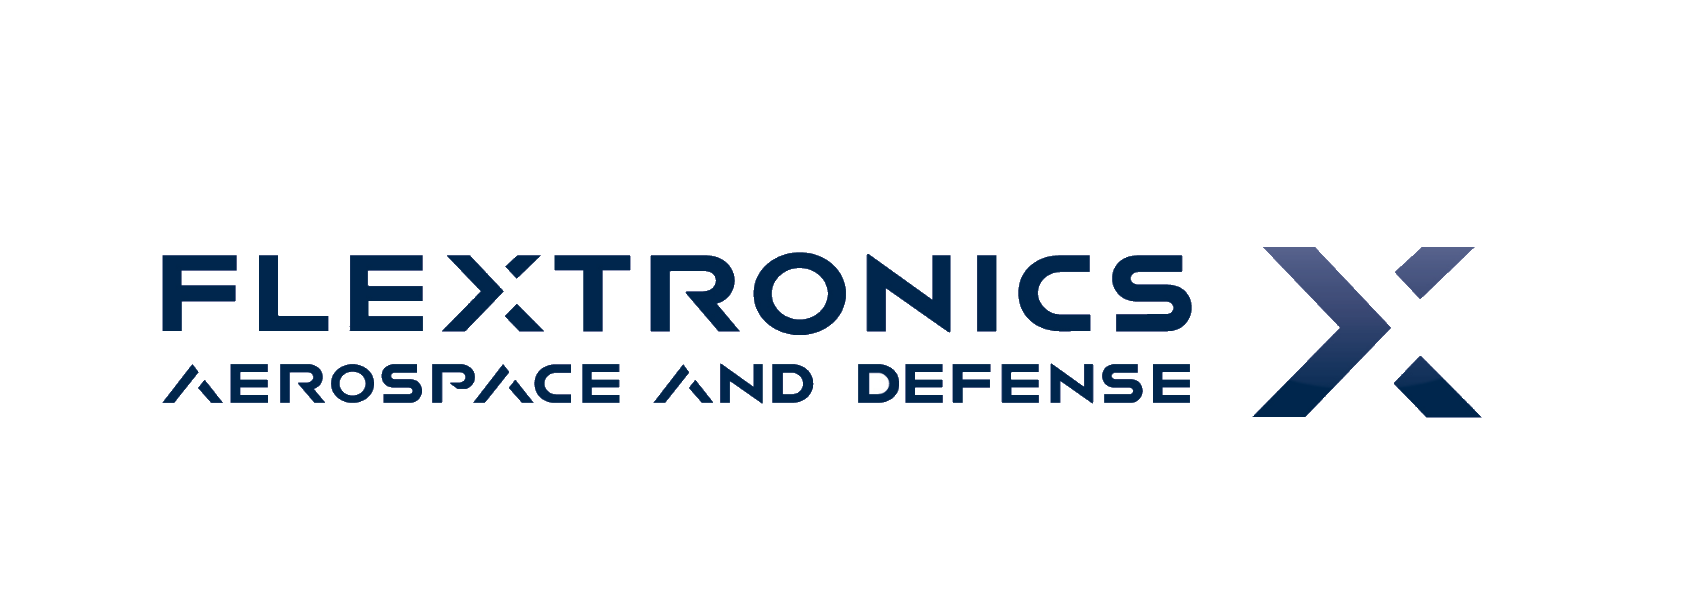 Flextronics Aerospace & Defense